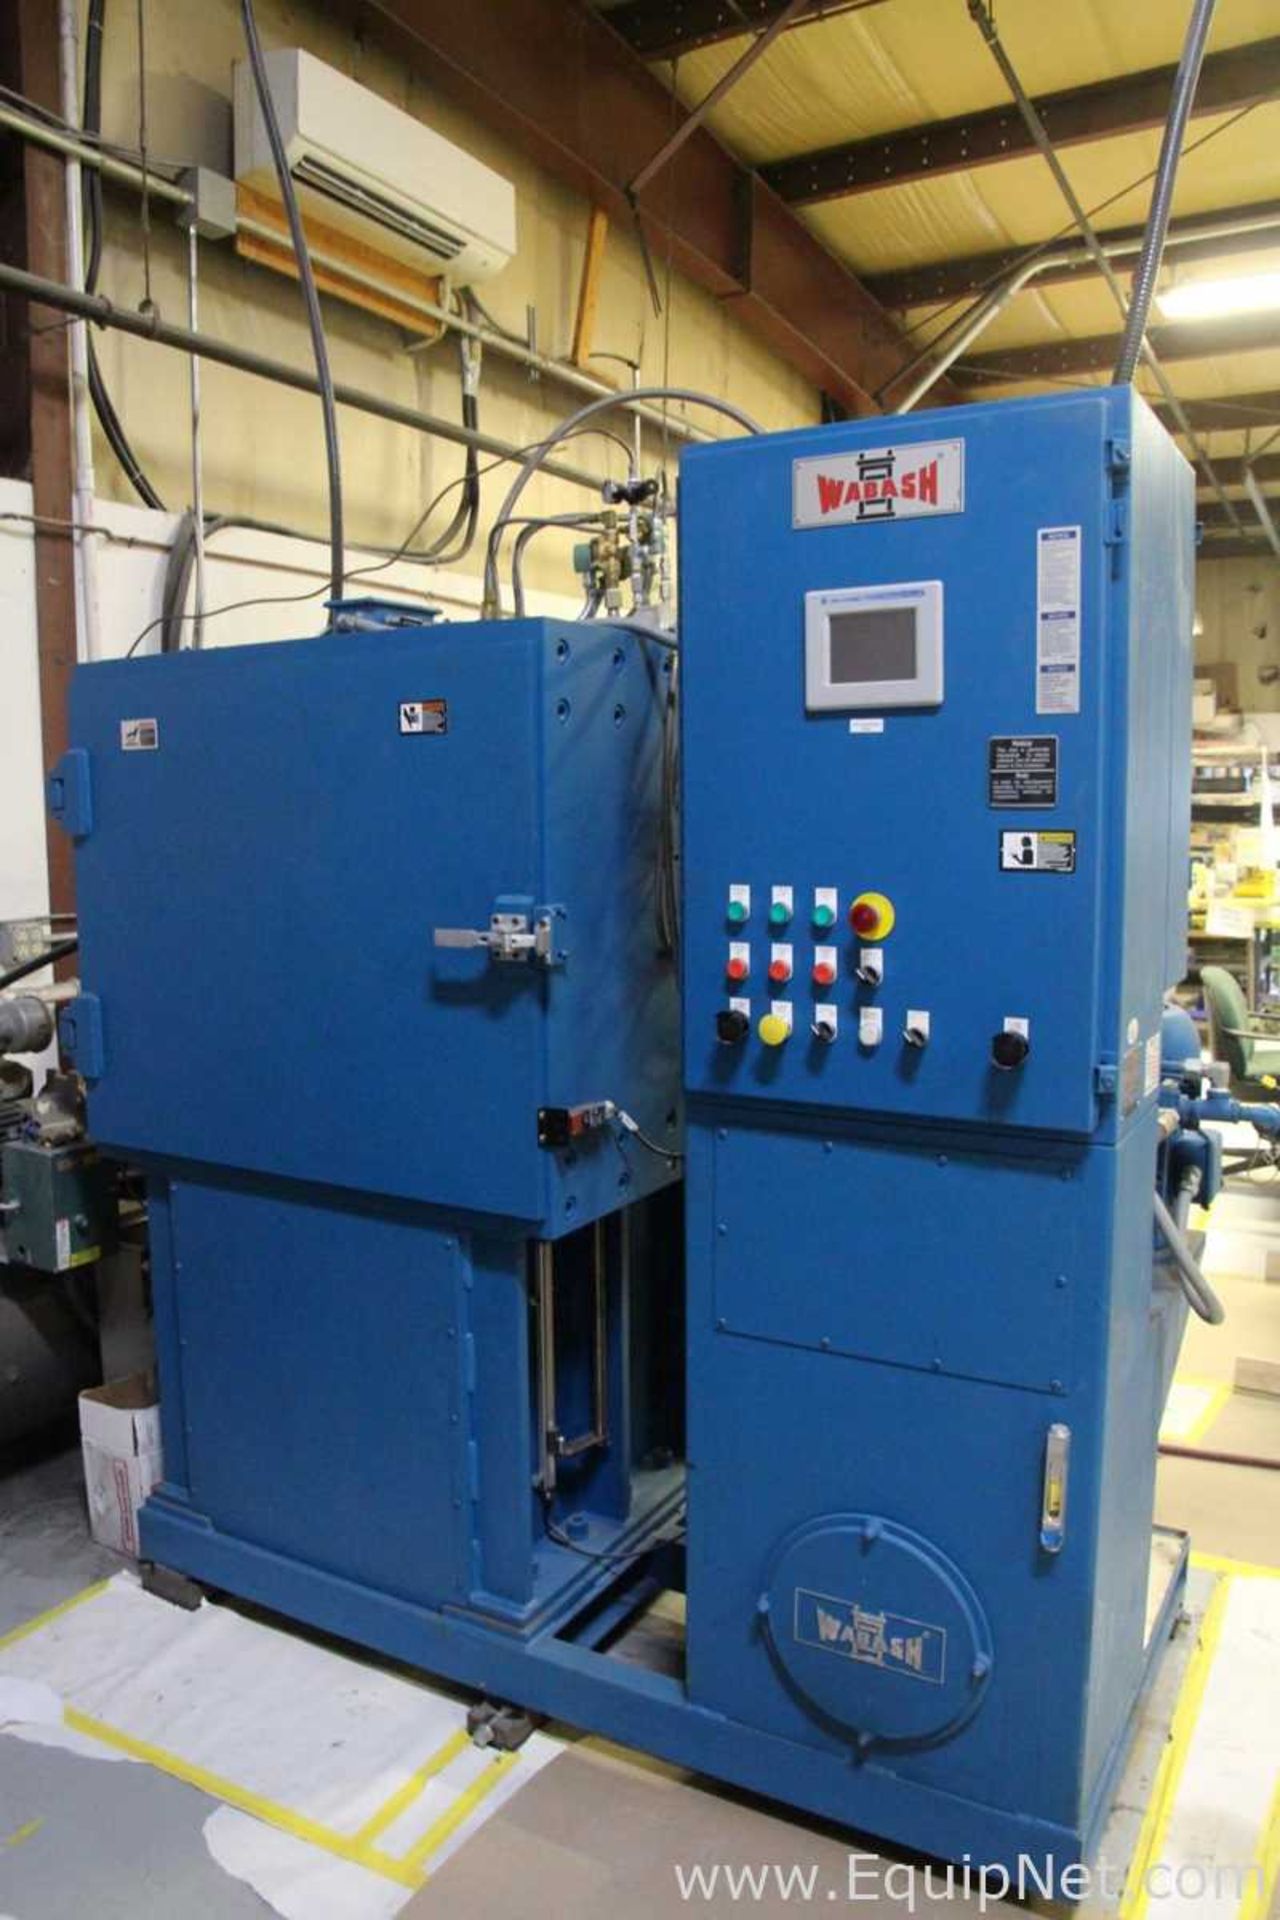 Wabash 4-150 Ton Vacuum Hydraulic Press - Image 10 of 11